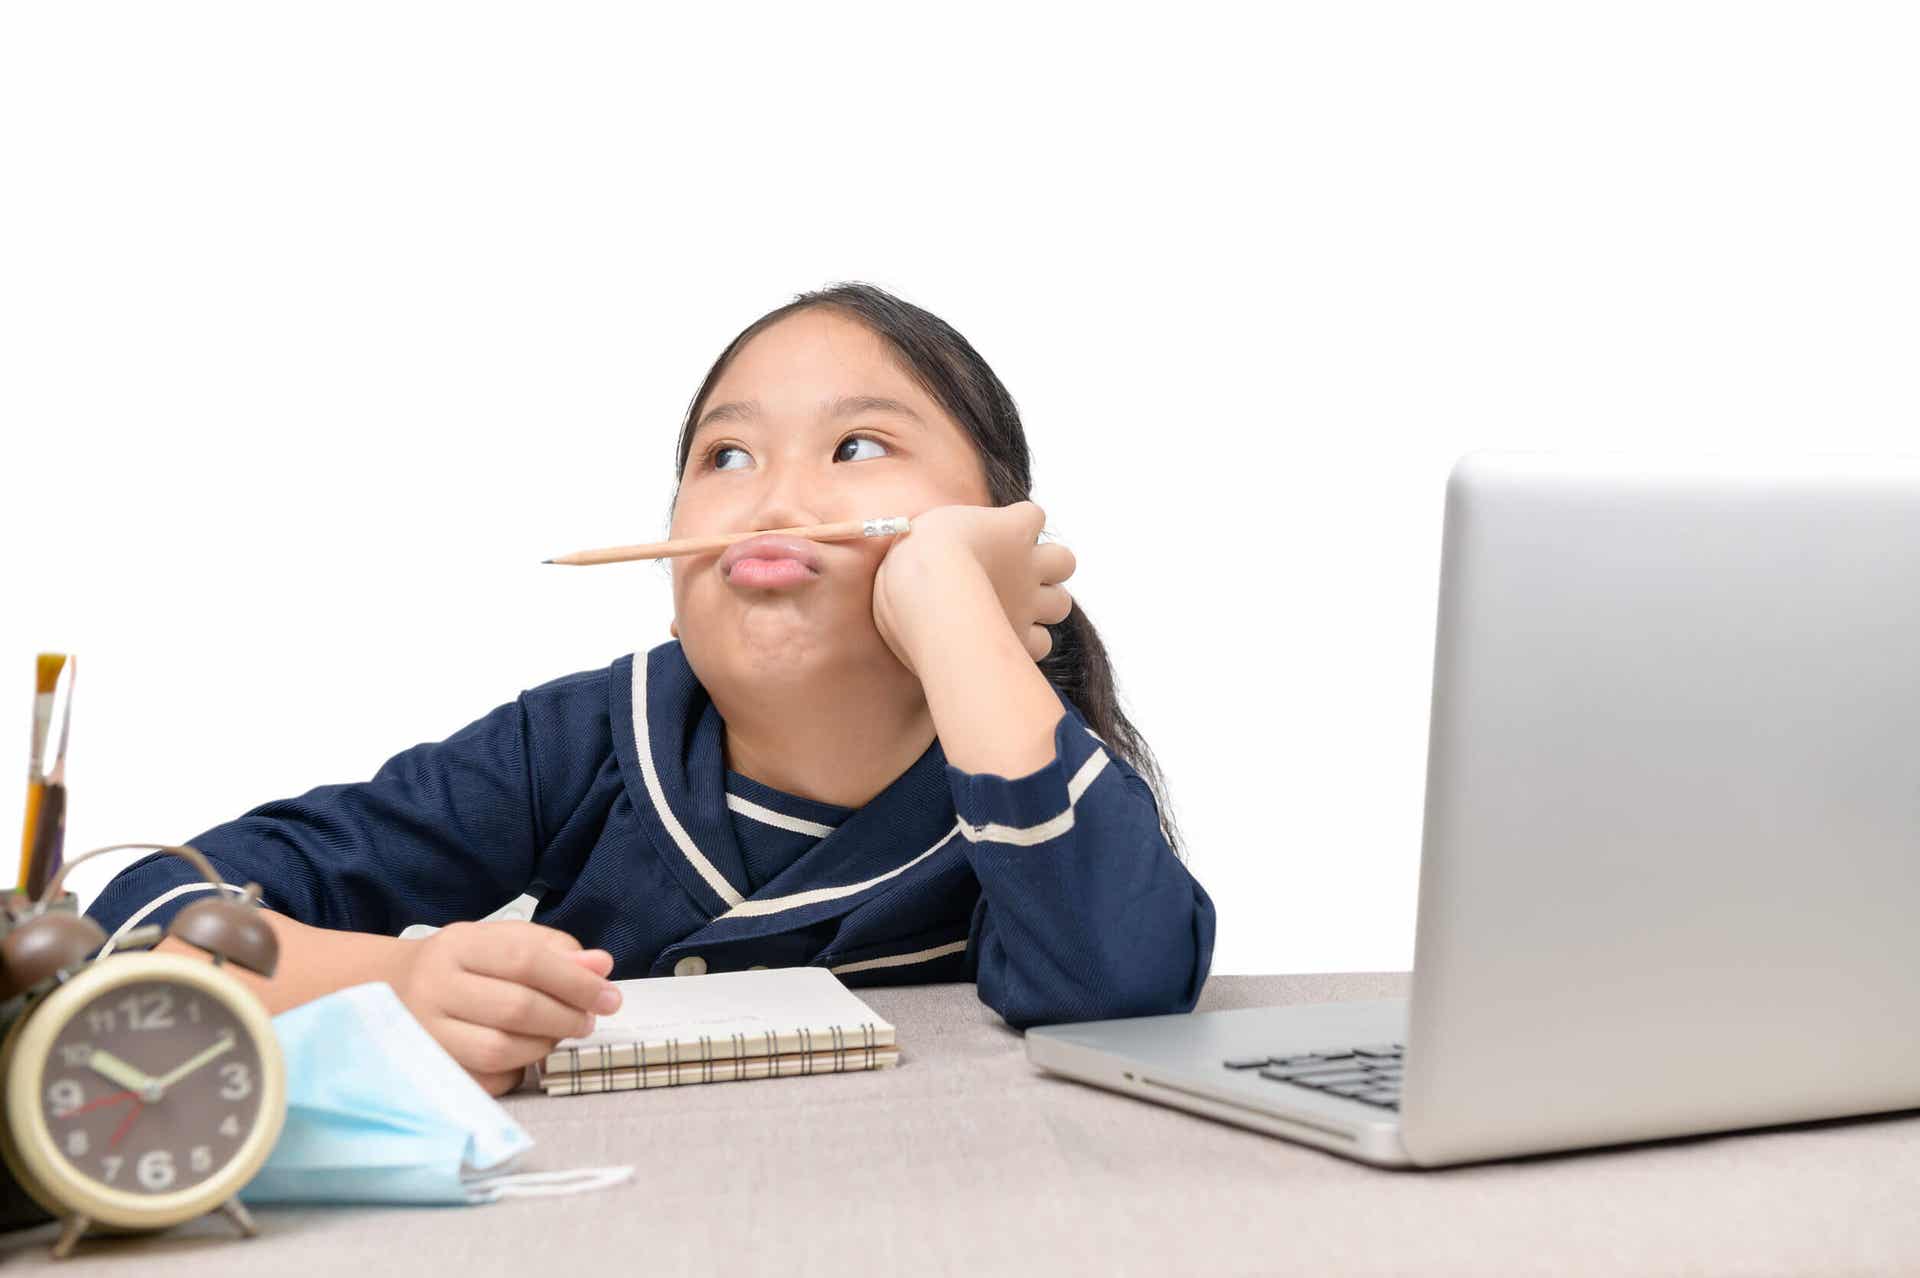 Dziewczynka siedząca przy laptopie, patrząca w stronę i bawiąca się ołówkiem.